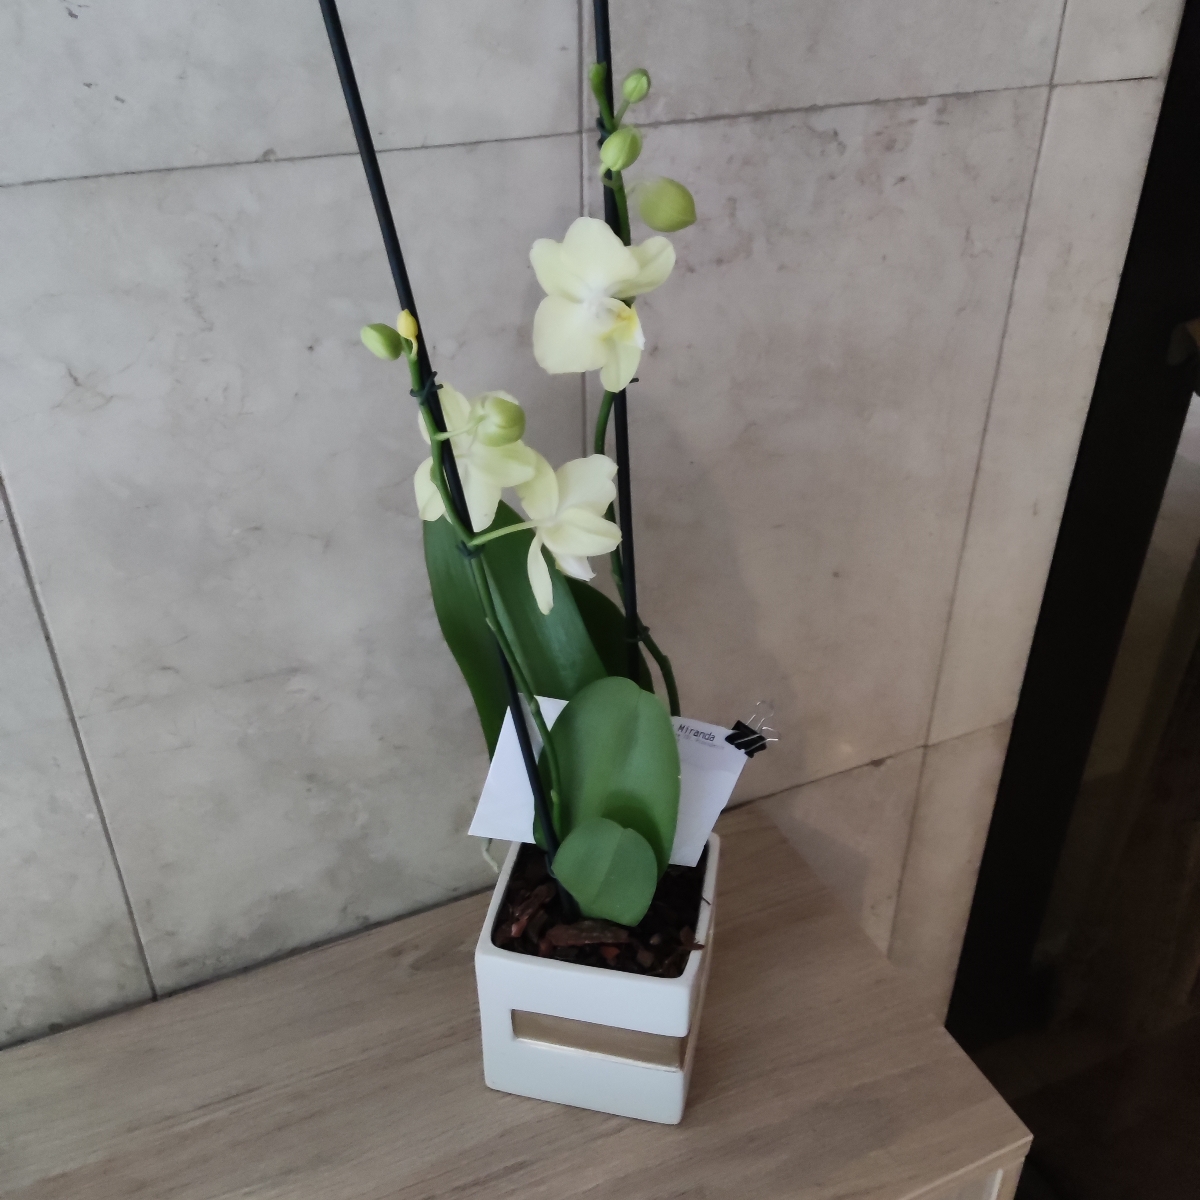 Orquídea dos (2) varas amarillaPhalaenopsis - Orquídea mariposa en base cubo blanco - Pedido 255053